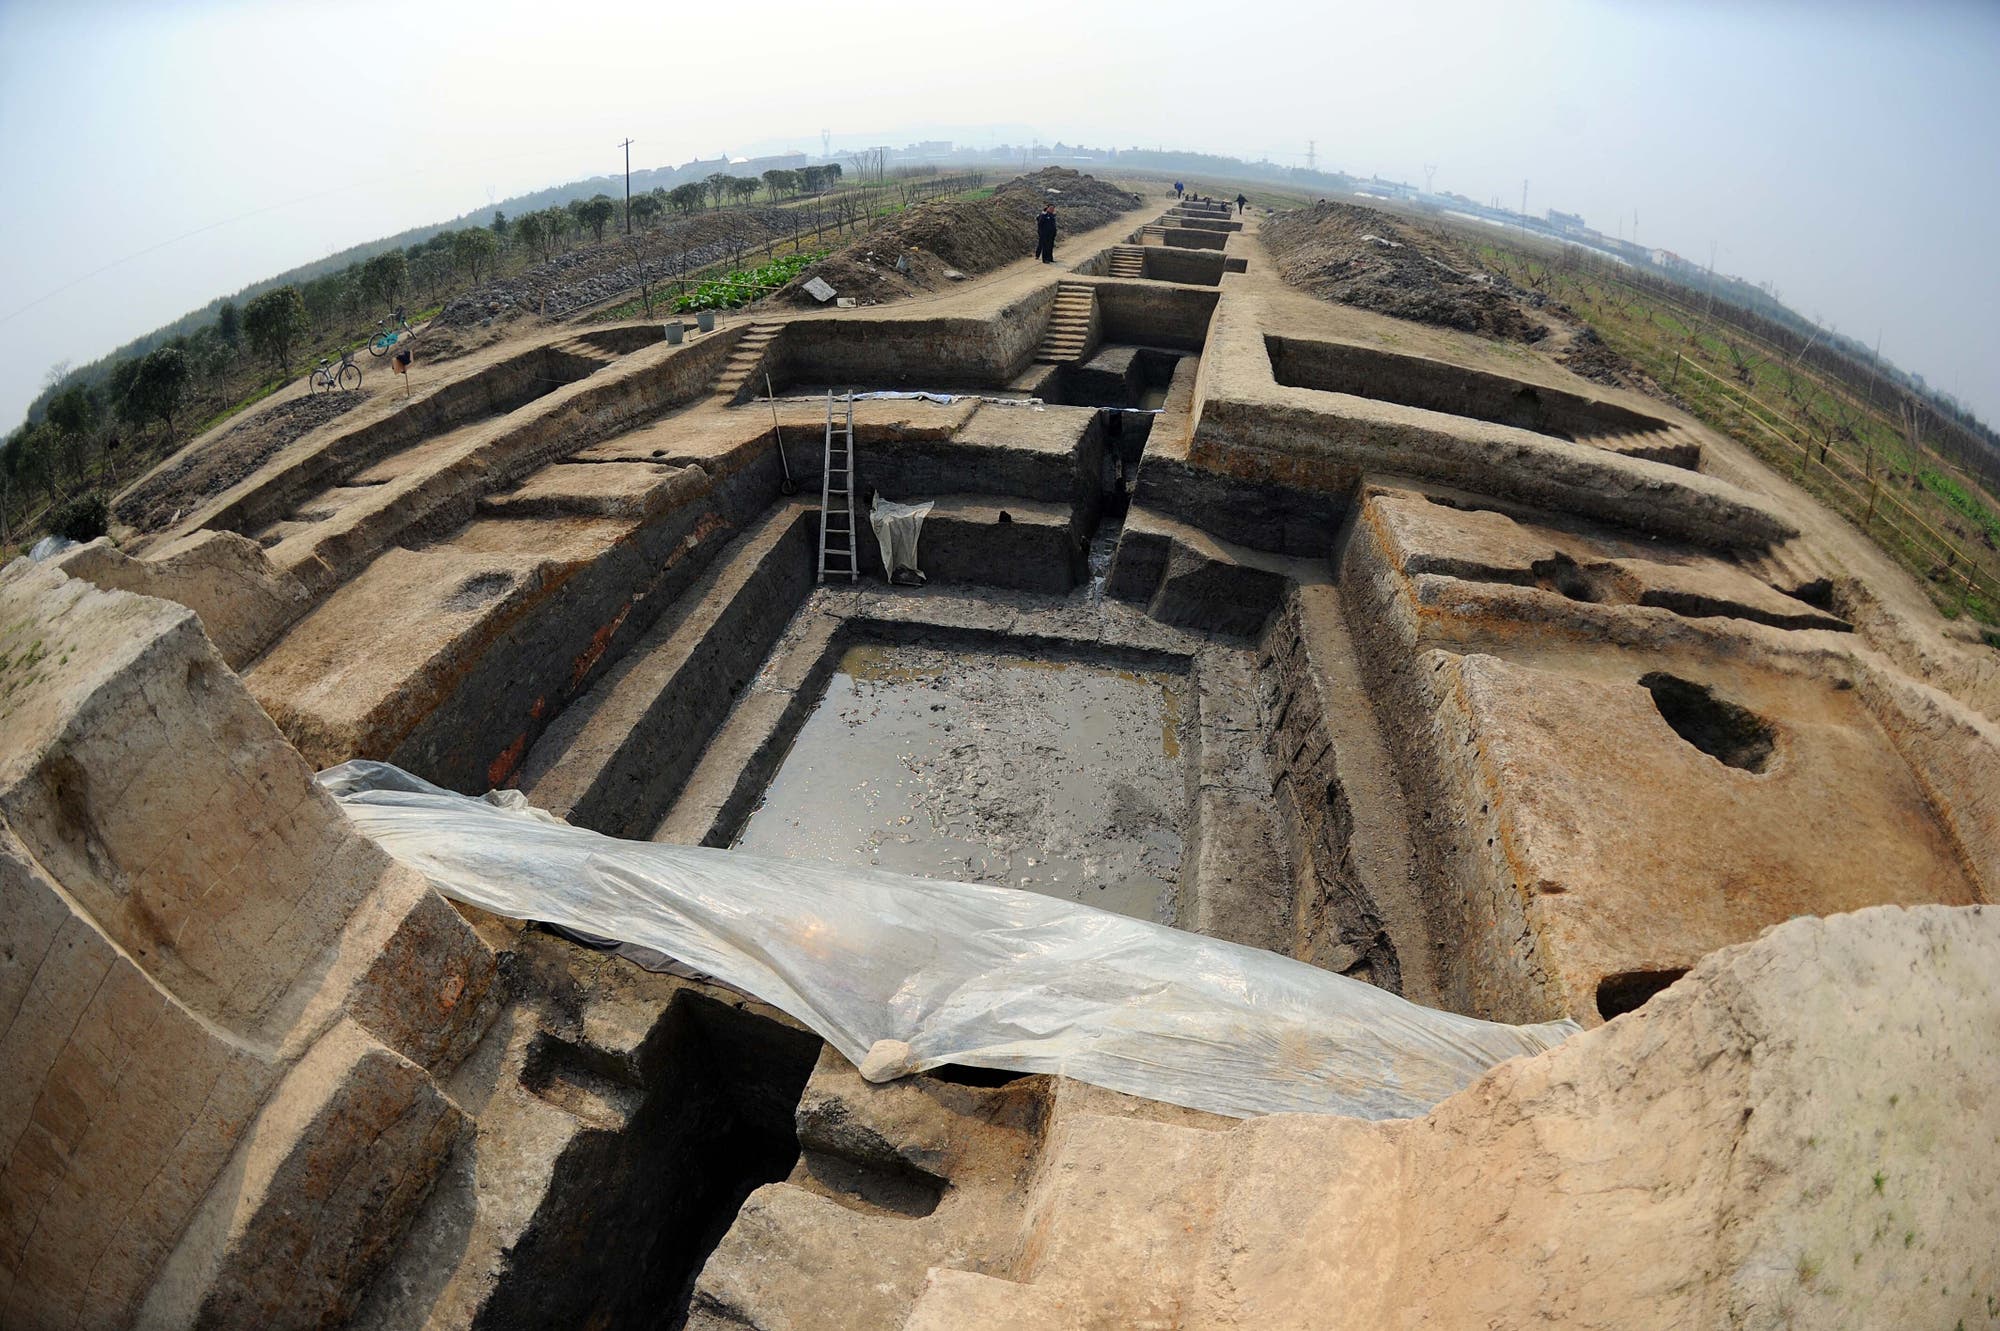 Grabung in Liangzhu. Die Fundstätte wurde 2019 zum UNESCO-Weltkulturerbe erklärt.